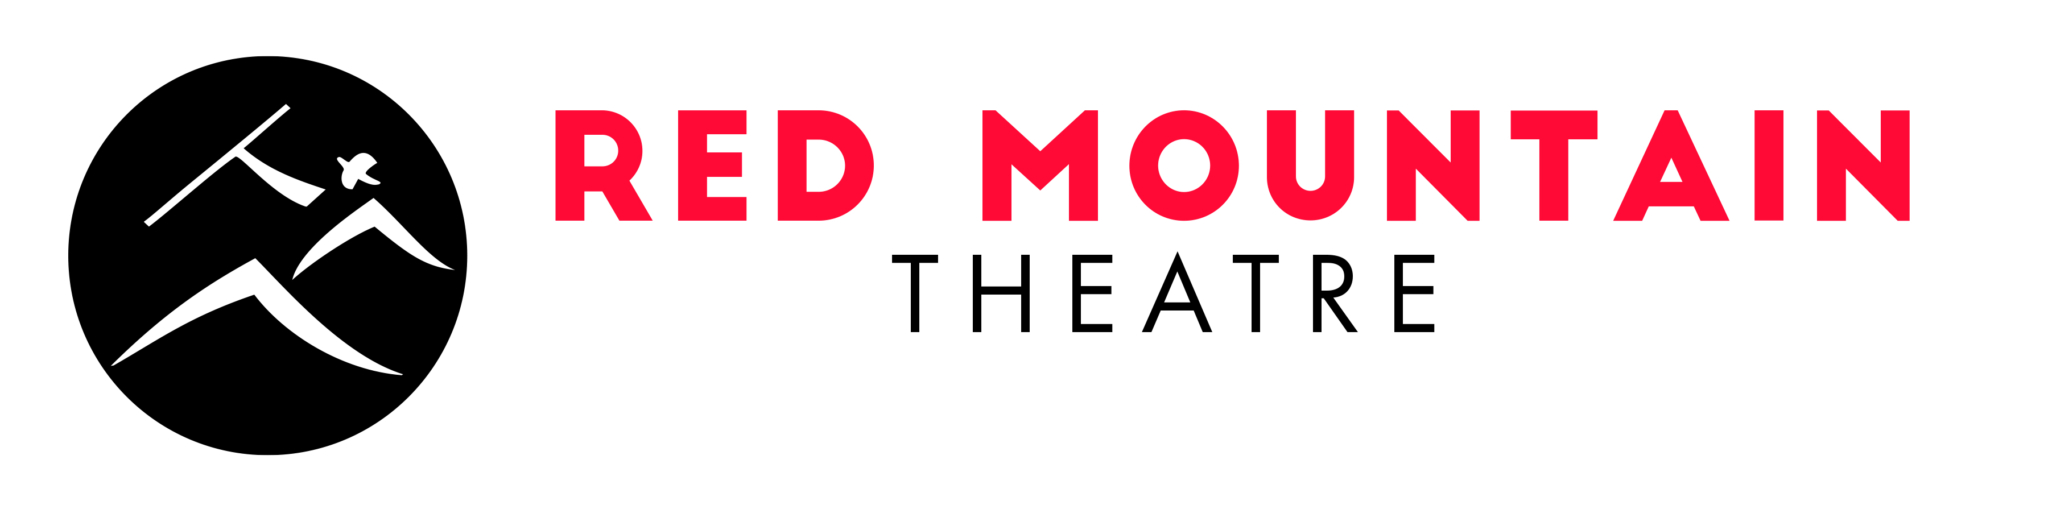 red mountain theatre logo